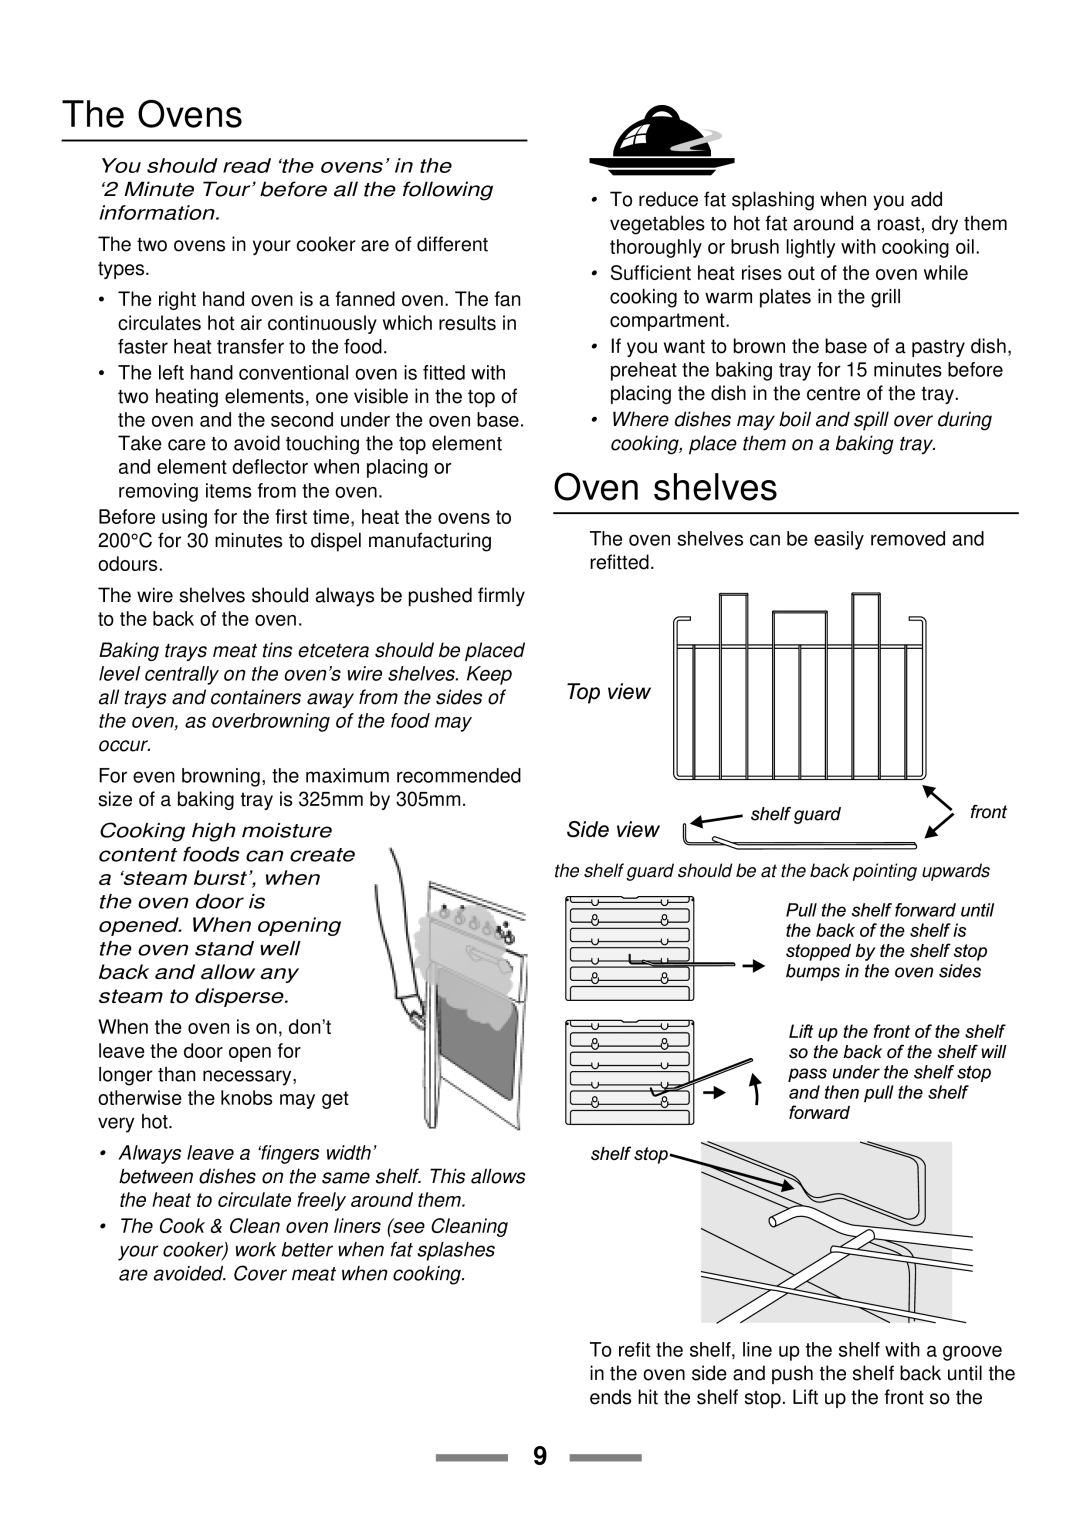 Rangemaster 110 installation instructions The Ovens, Oven shelves 